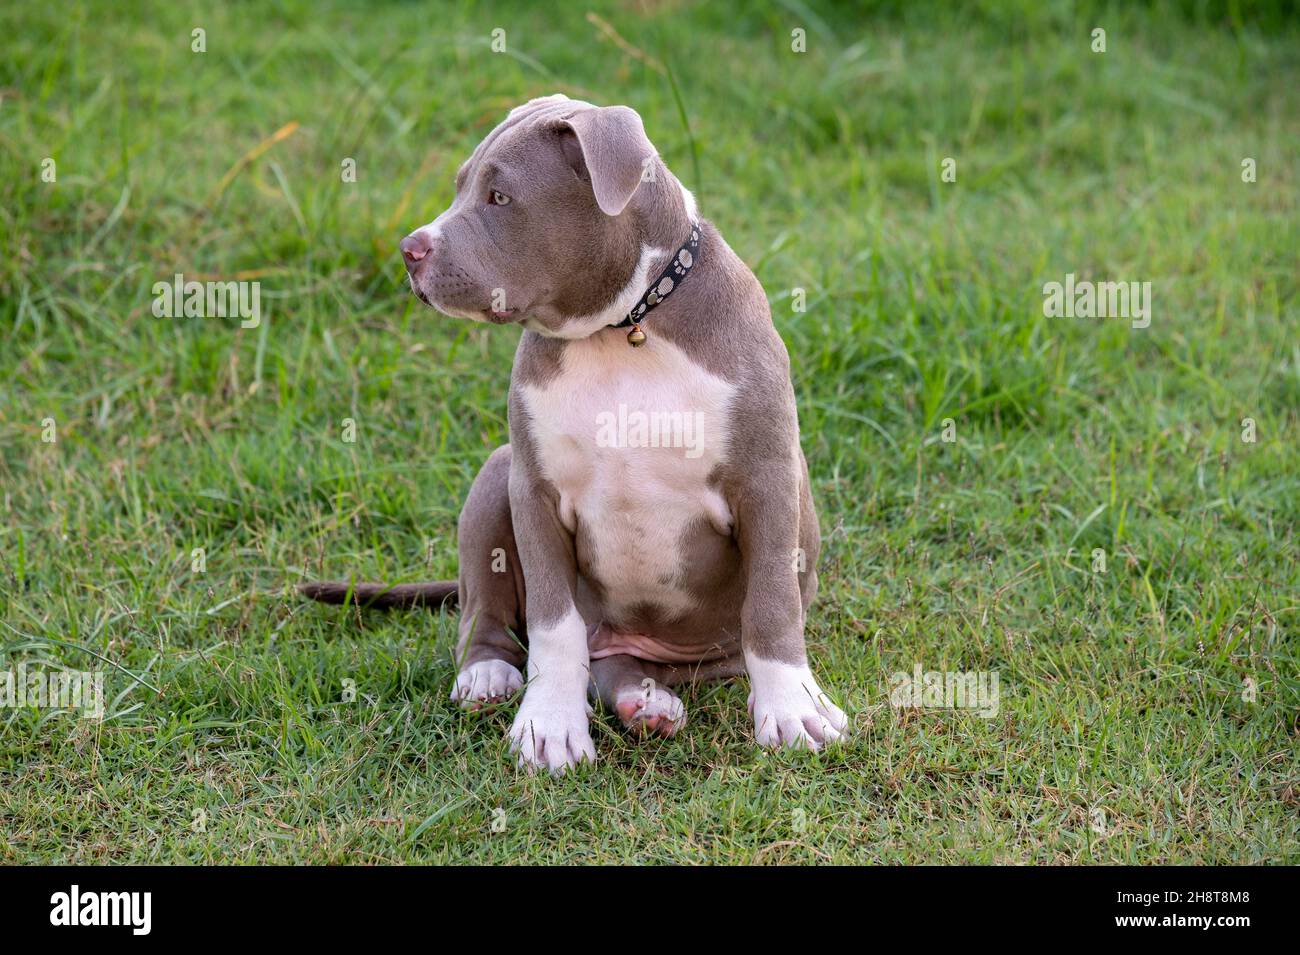 Cucciolo seduto sull'erba, cane cucciolo bully americano, divertente PET e carino Foto Stock